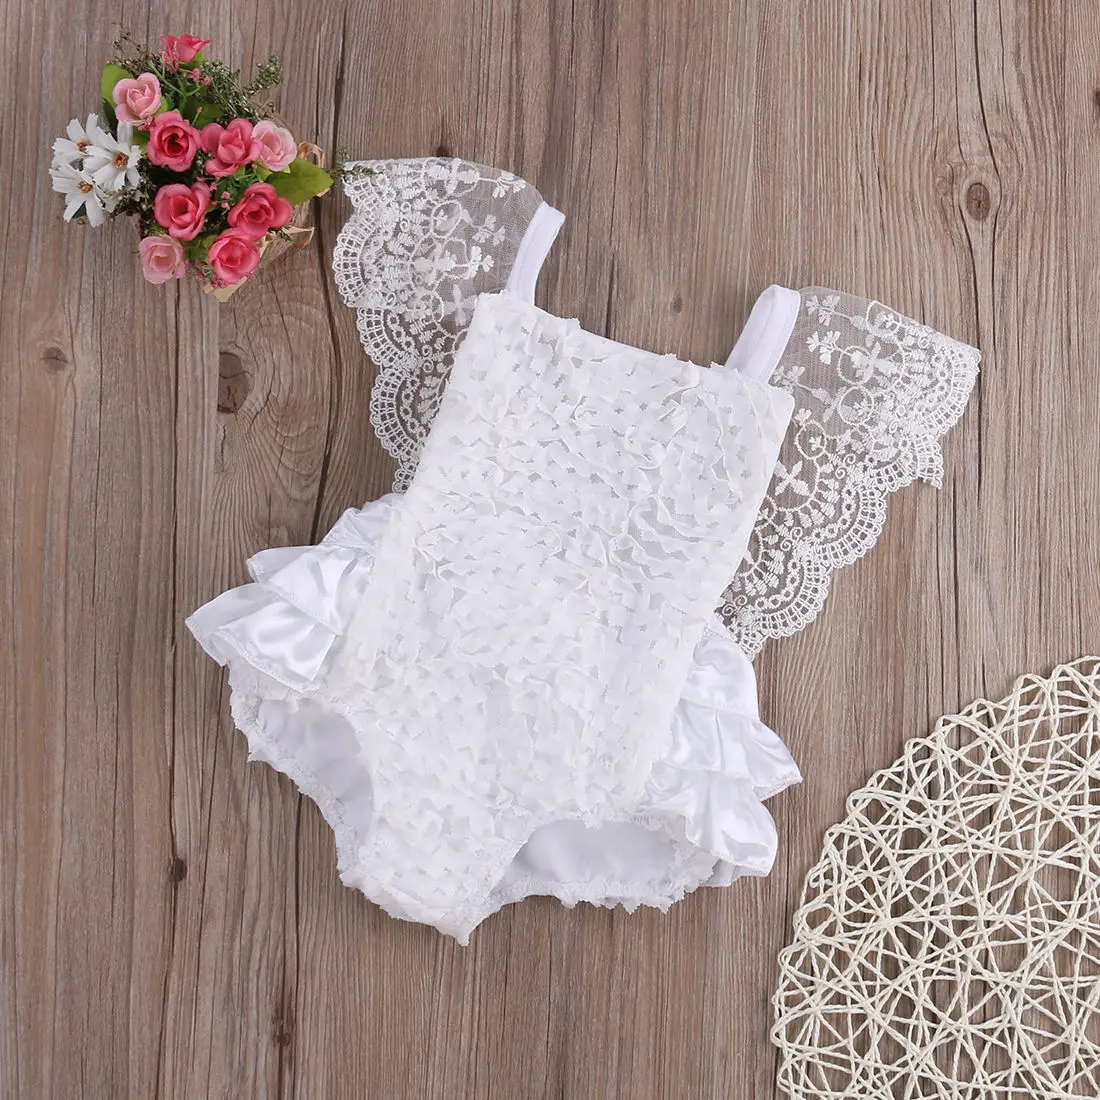 Симпатичный хлопковый комбинезон с белыми кружевами для маленьких девочек кружевная оборка с цветочным узором одежда для девочек детский комбинезон для девочек пляжный костюм от 0 до 18 месяцев - Цвет: Белый